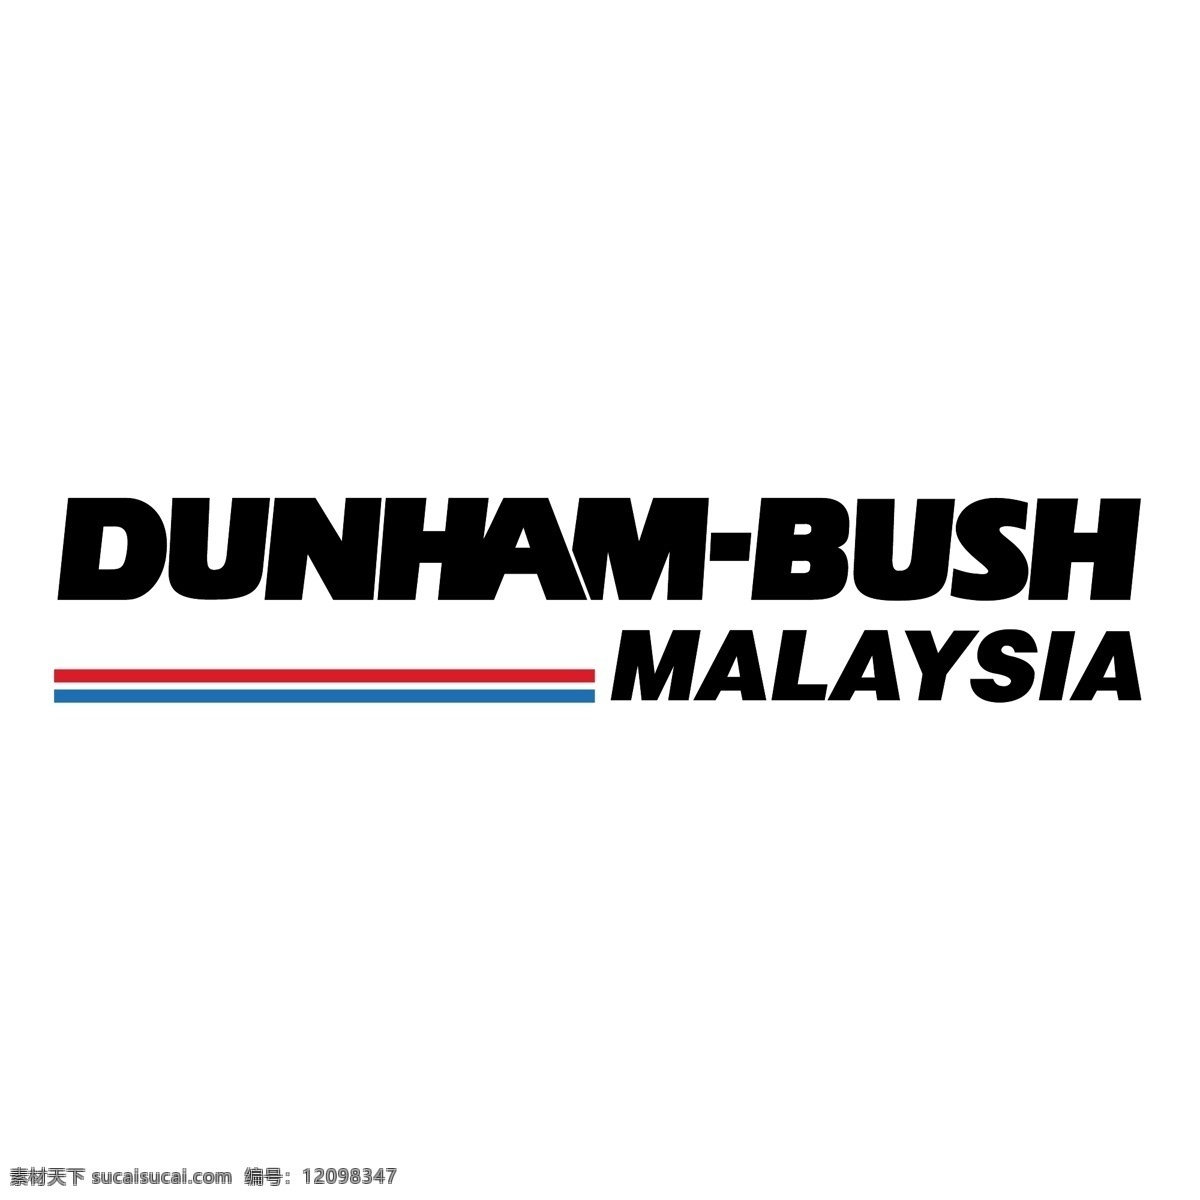 马来西亚 顿 汉 布什 自由 标识 psd源文件 logo设计